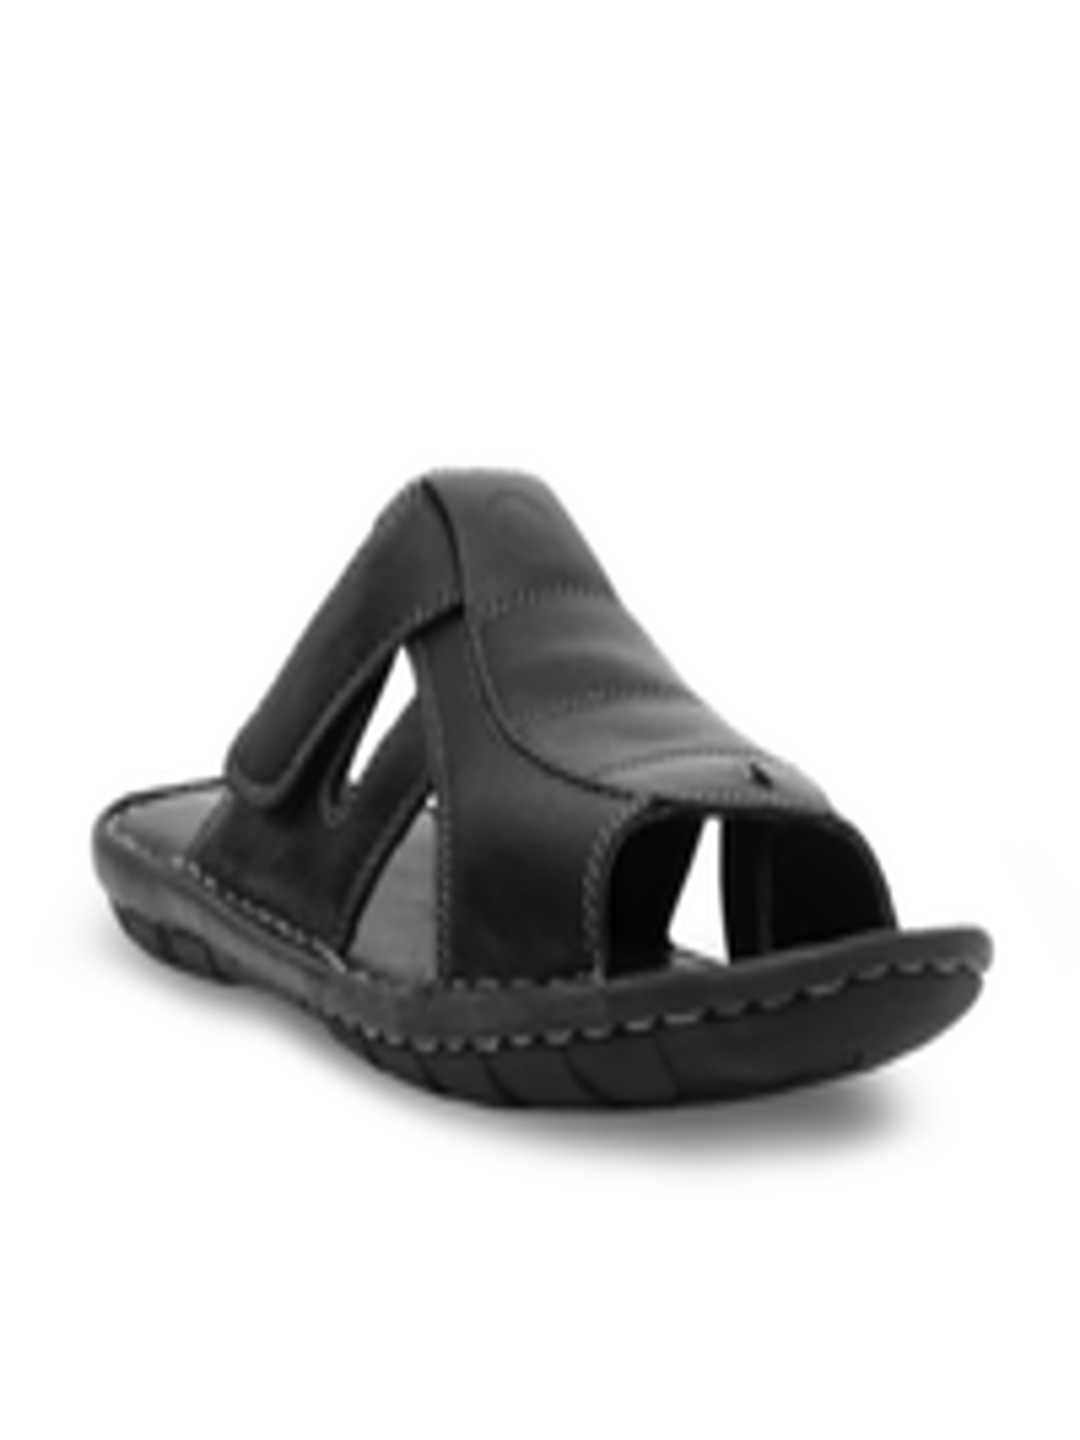 Buy Ventoland Men Black Leather Sandals - Sandals for Men 829762 | Myntra